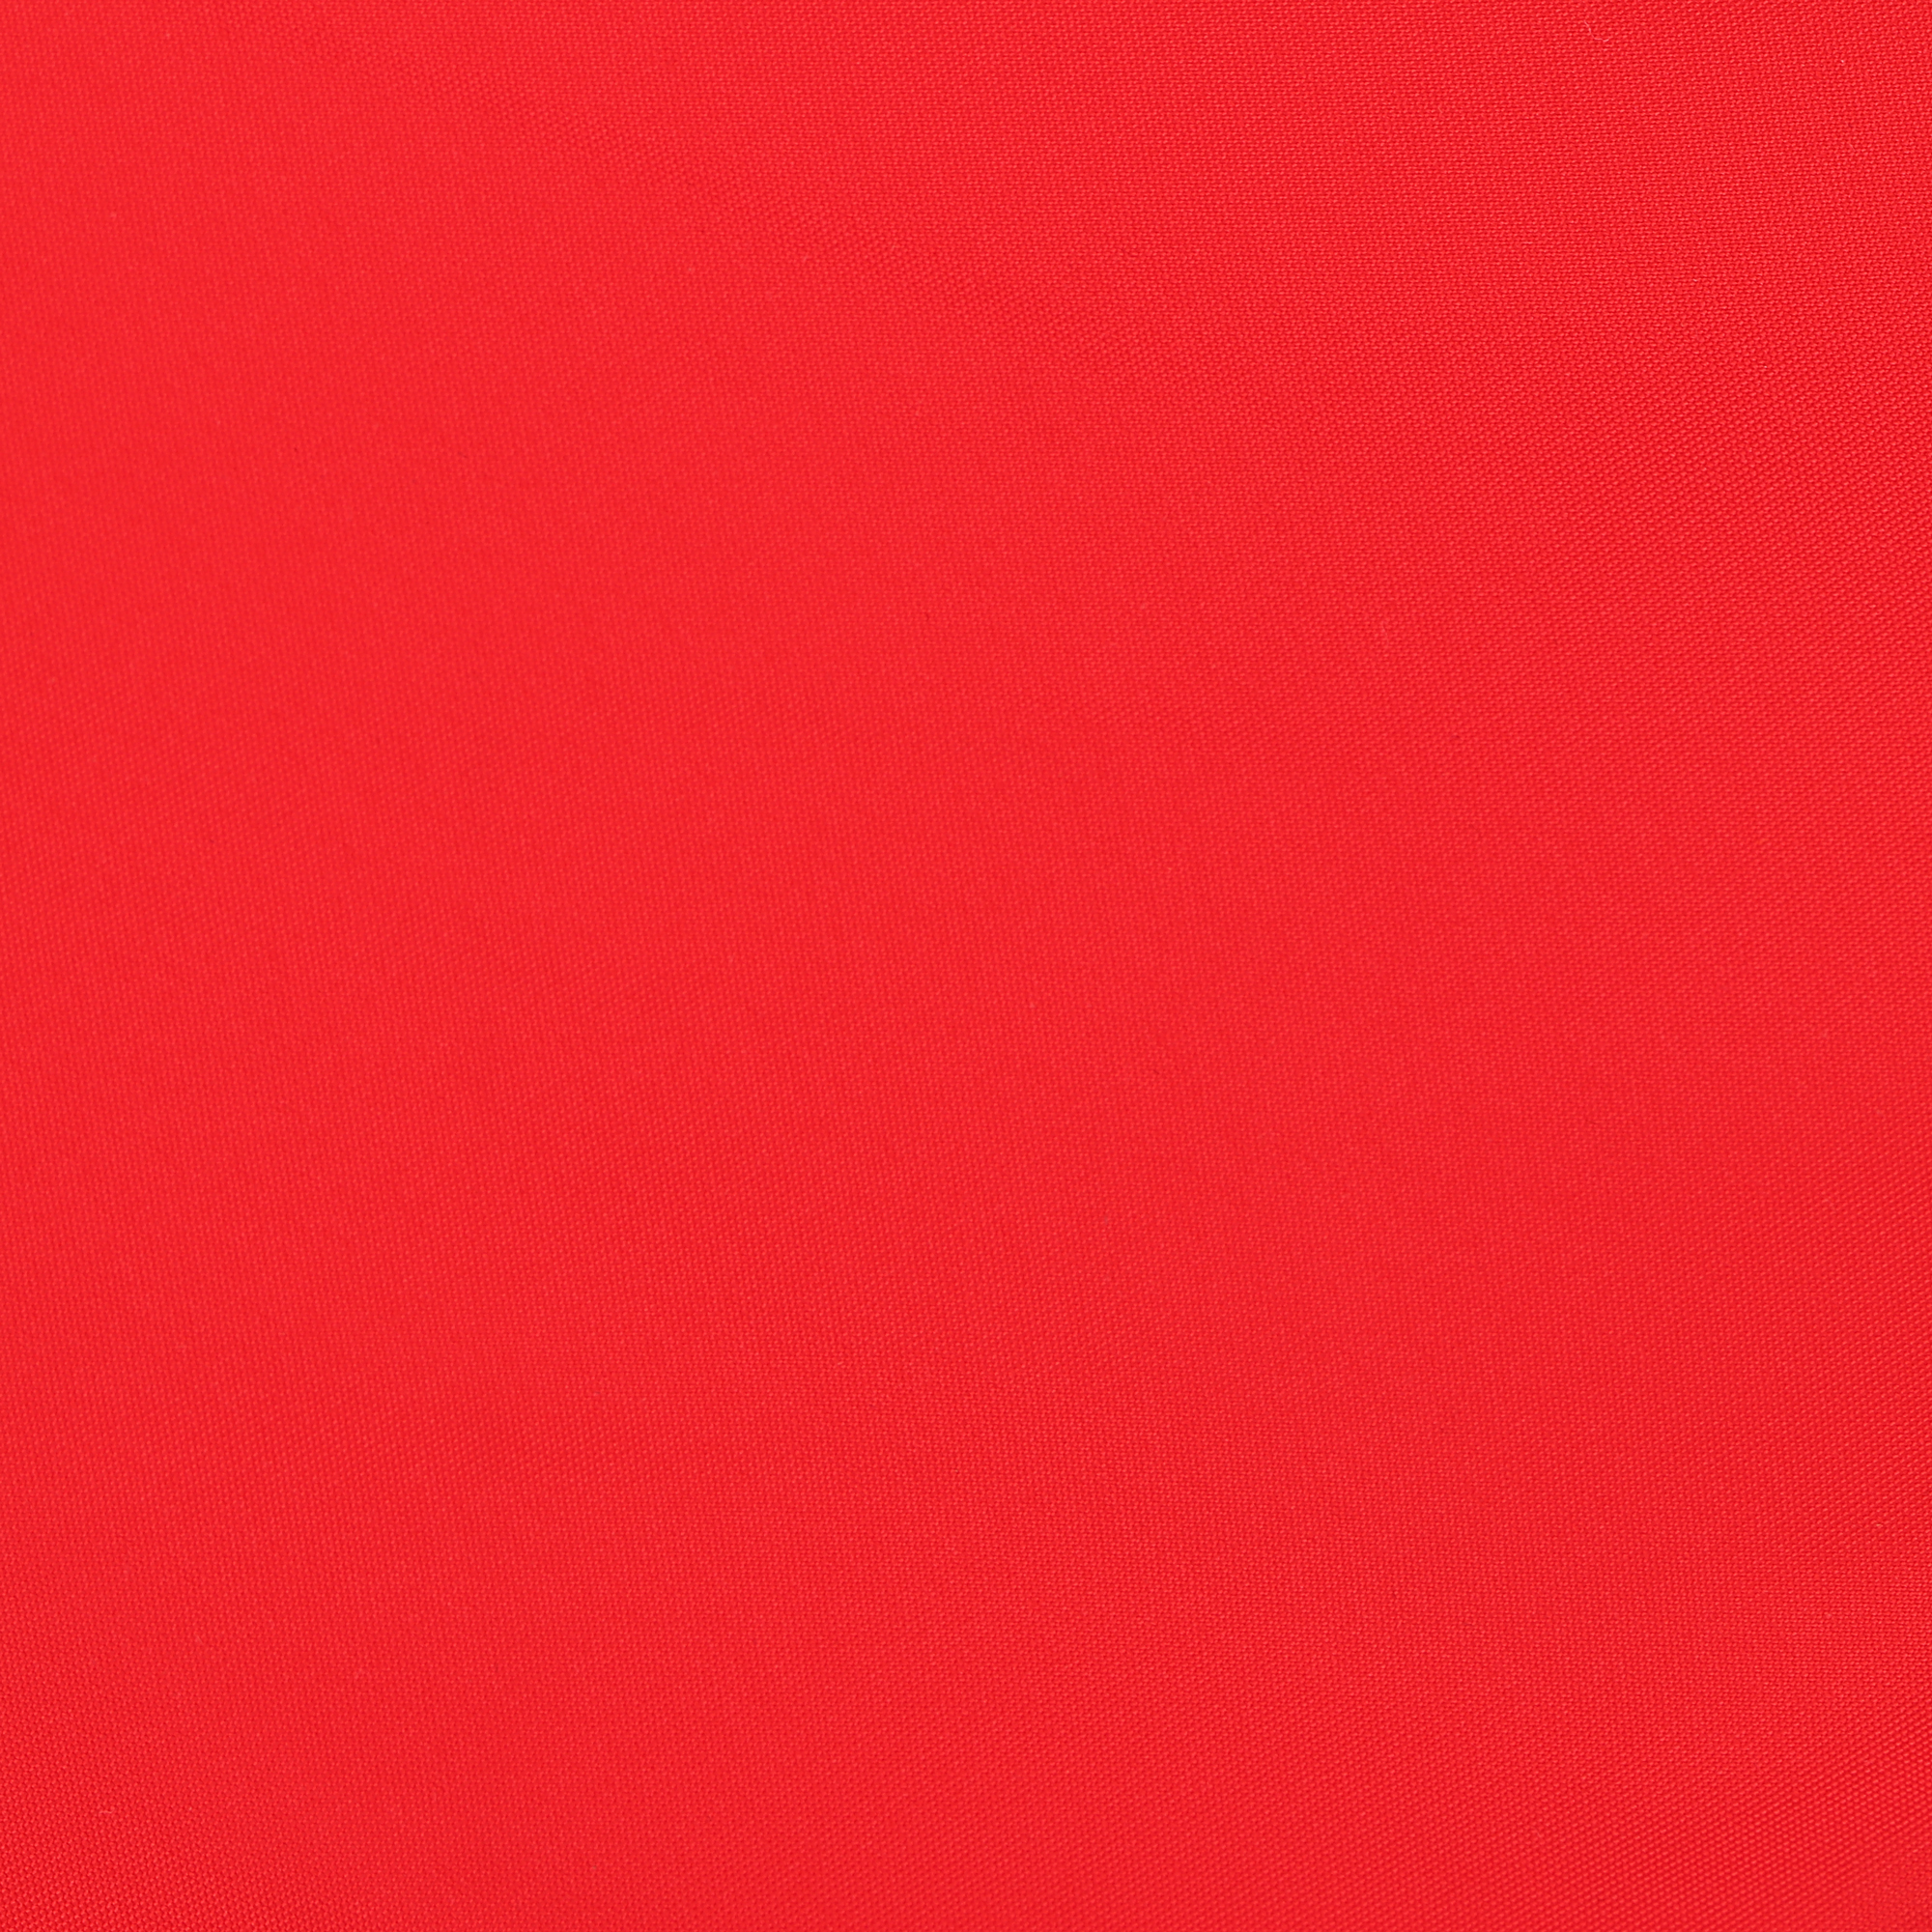 Мужские пляжные шорты Joyord красные, цвет красный, размер L - фото 4